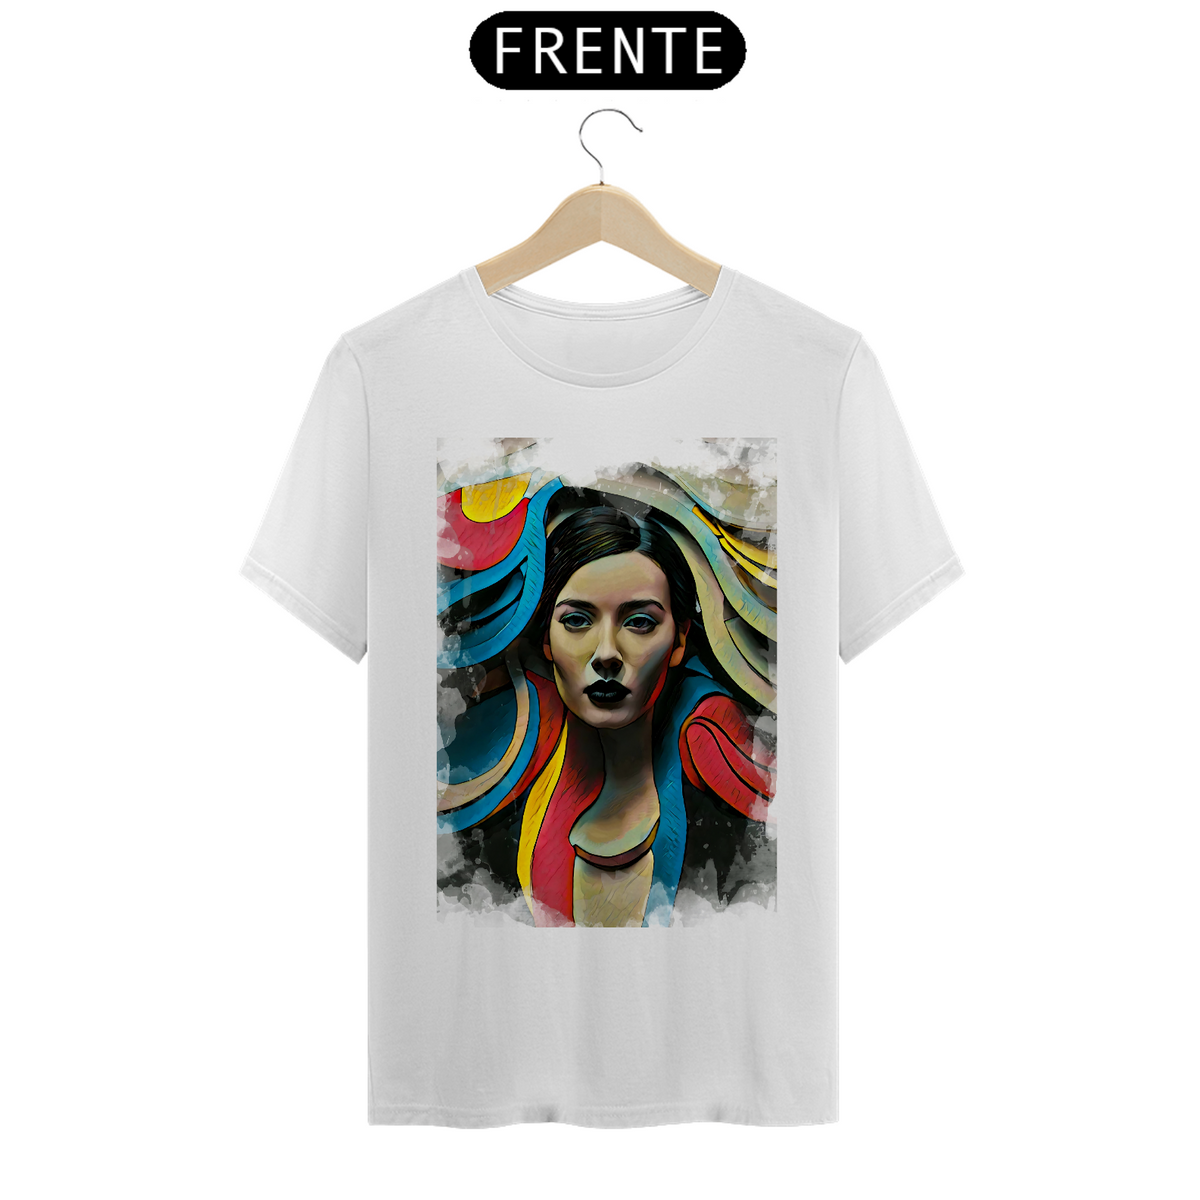 Nome do produto: Camiseta art style woman